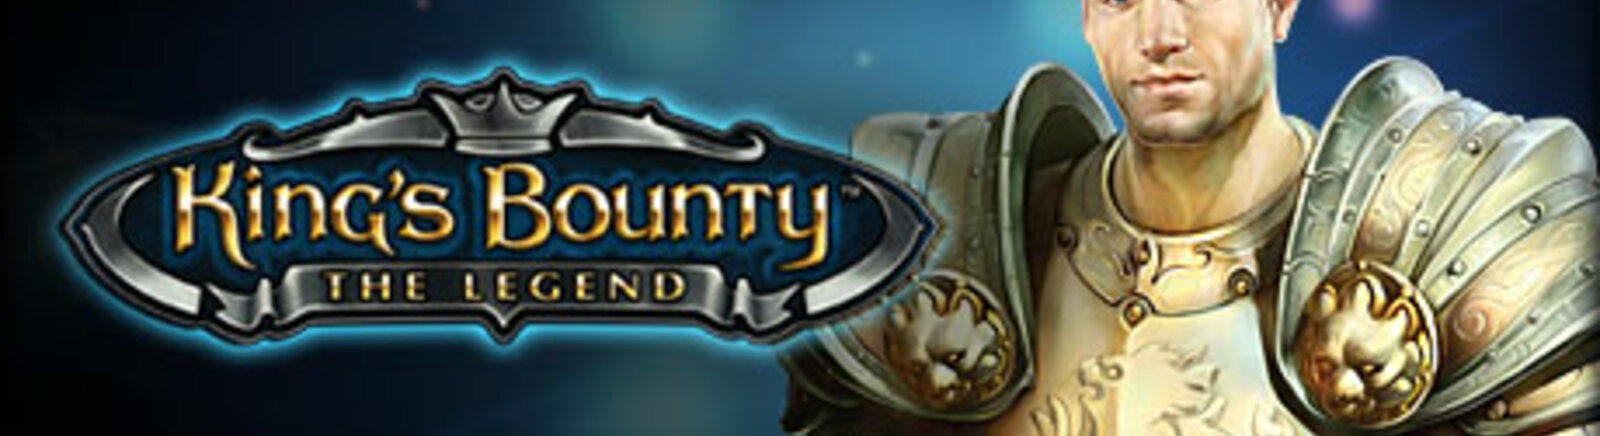 Игры, похожие на King's Bounty: DarkSide - похожие